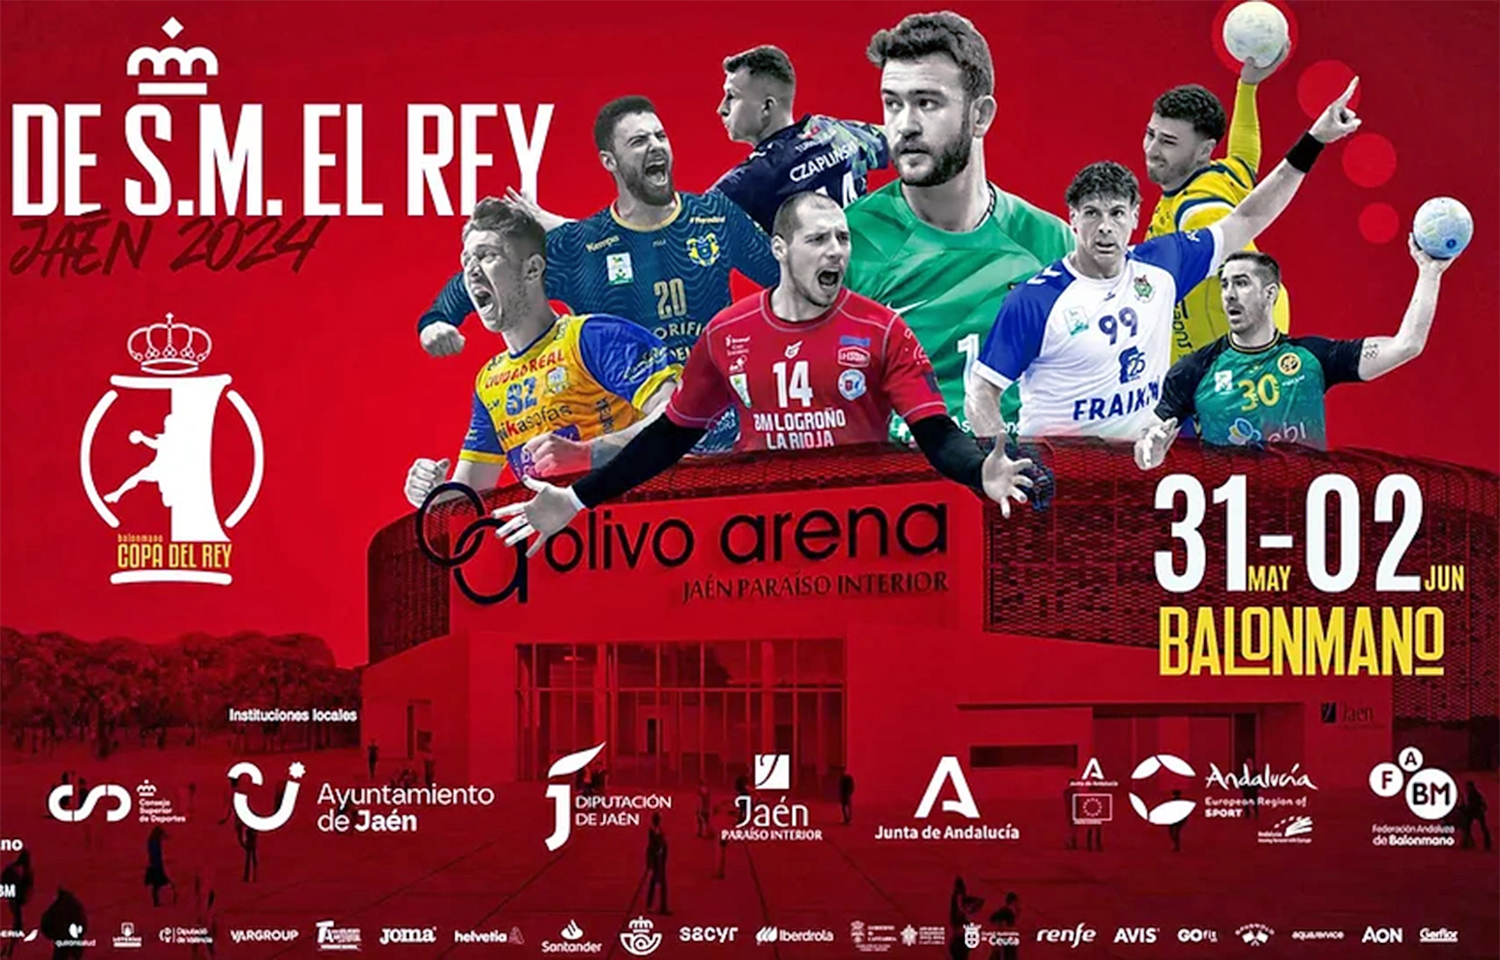 El Olivo Arena de Jaén alberga este viernes, 31 de mayo, la fase final de la XLIX Copa del Rey de balonmano, así como de la Minicopa